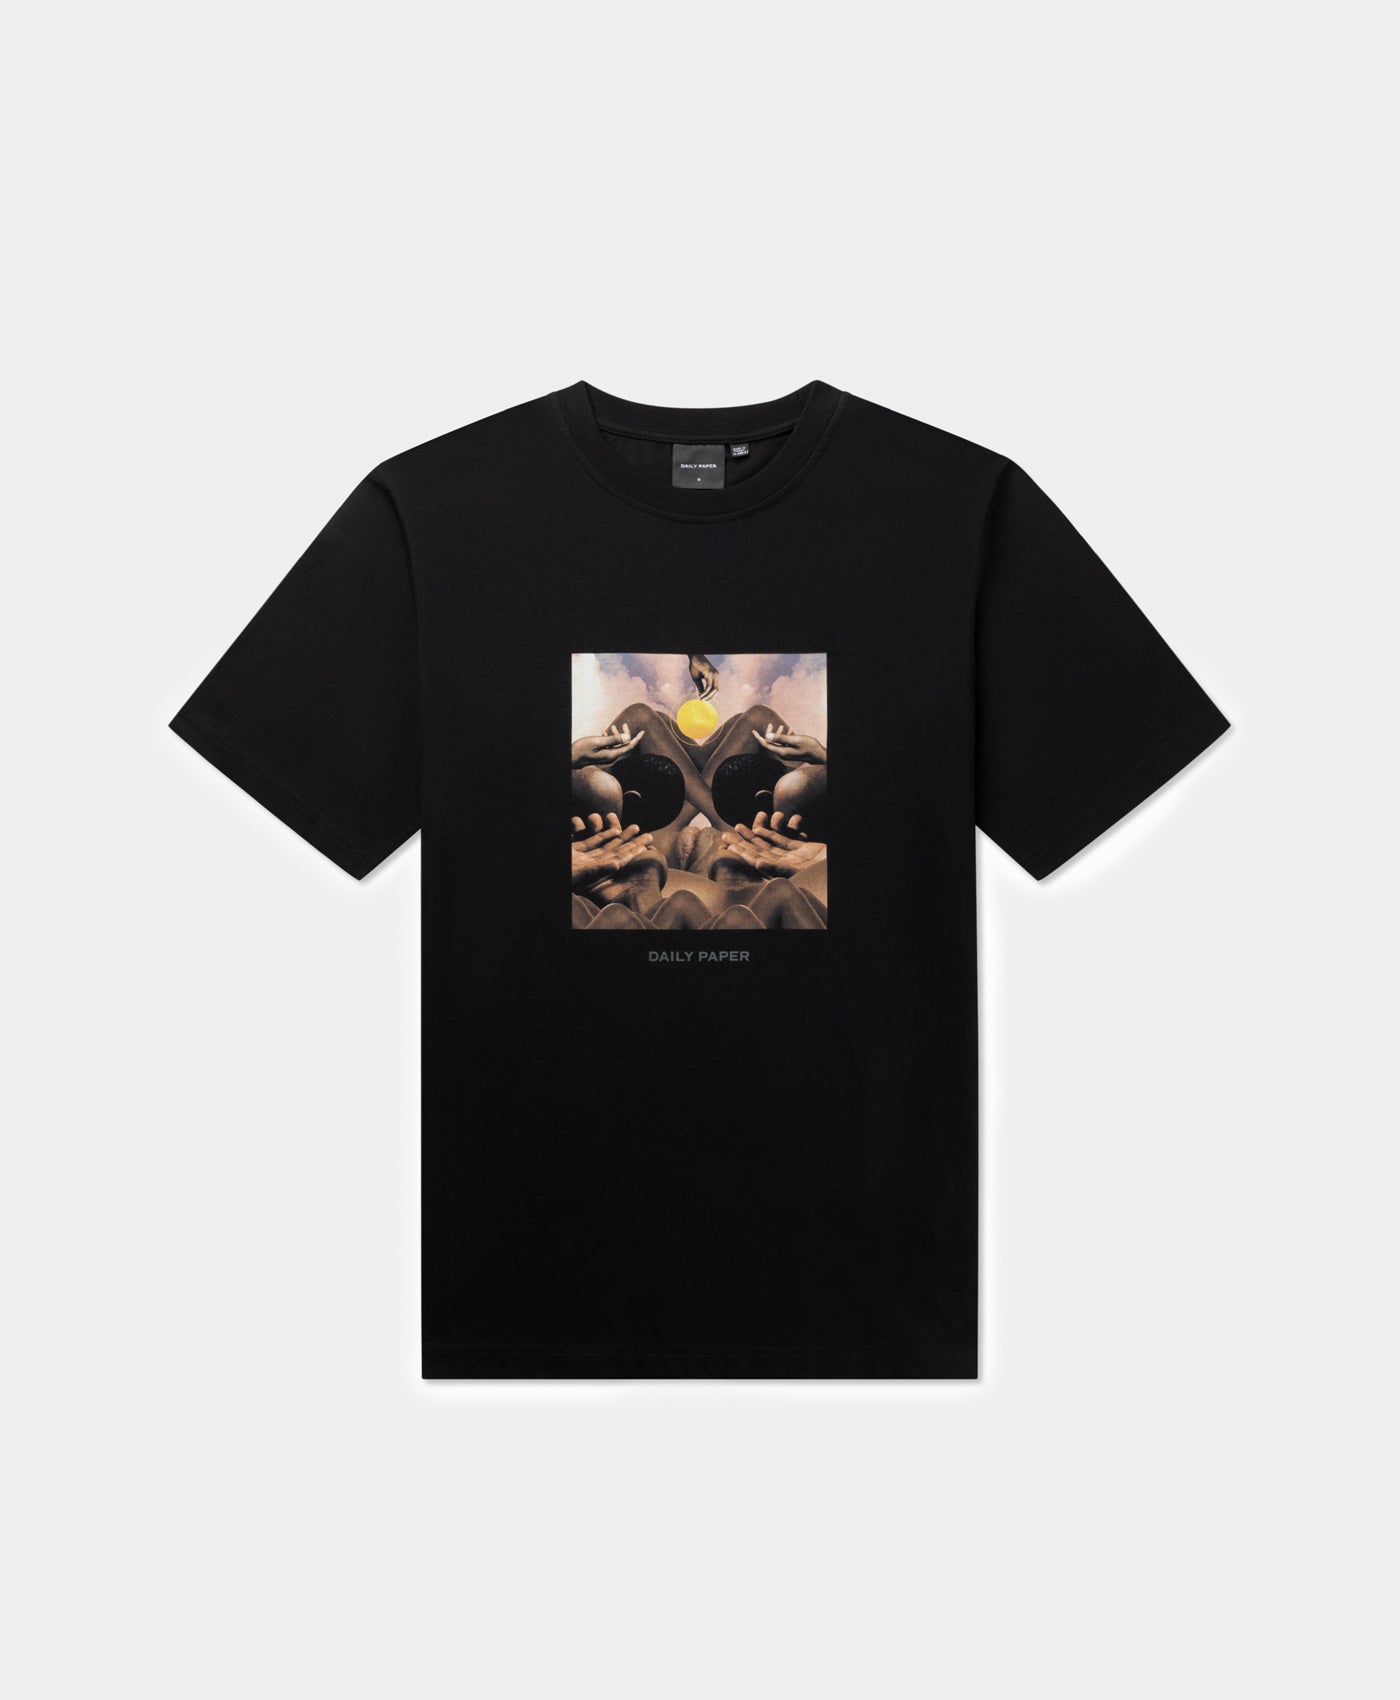 DP - Black Landscape T-Shirt - Packshot - Front